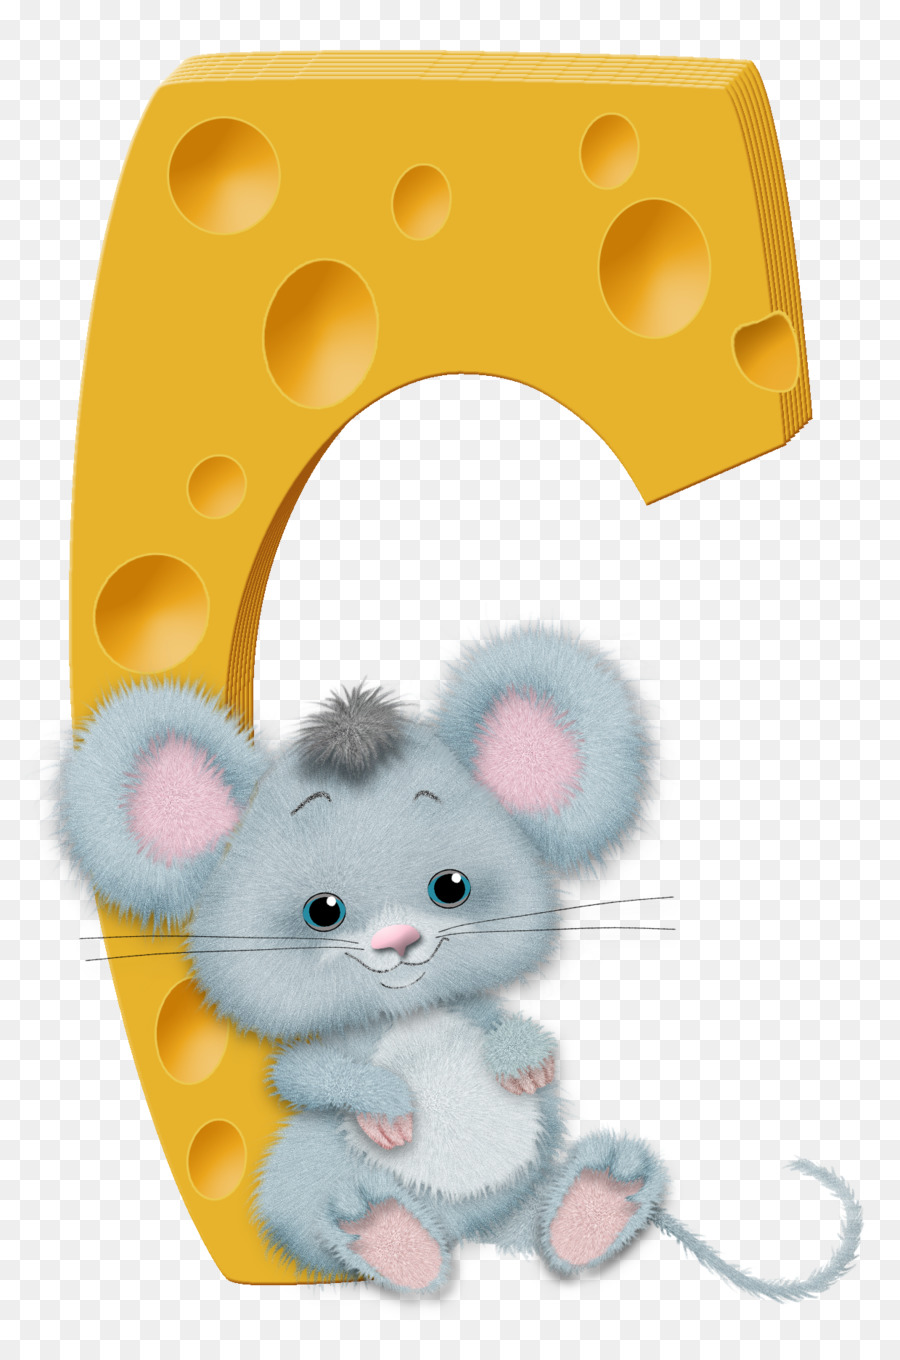 Mouse Criceto Baffi Animali Di Peluche & Peluches - topo